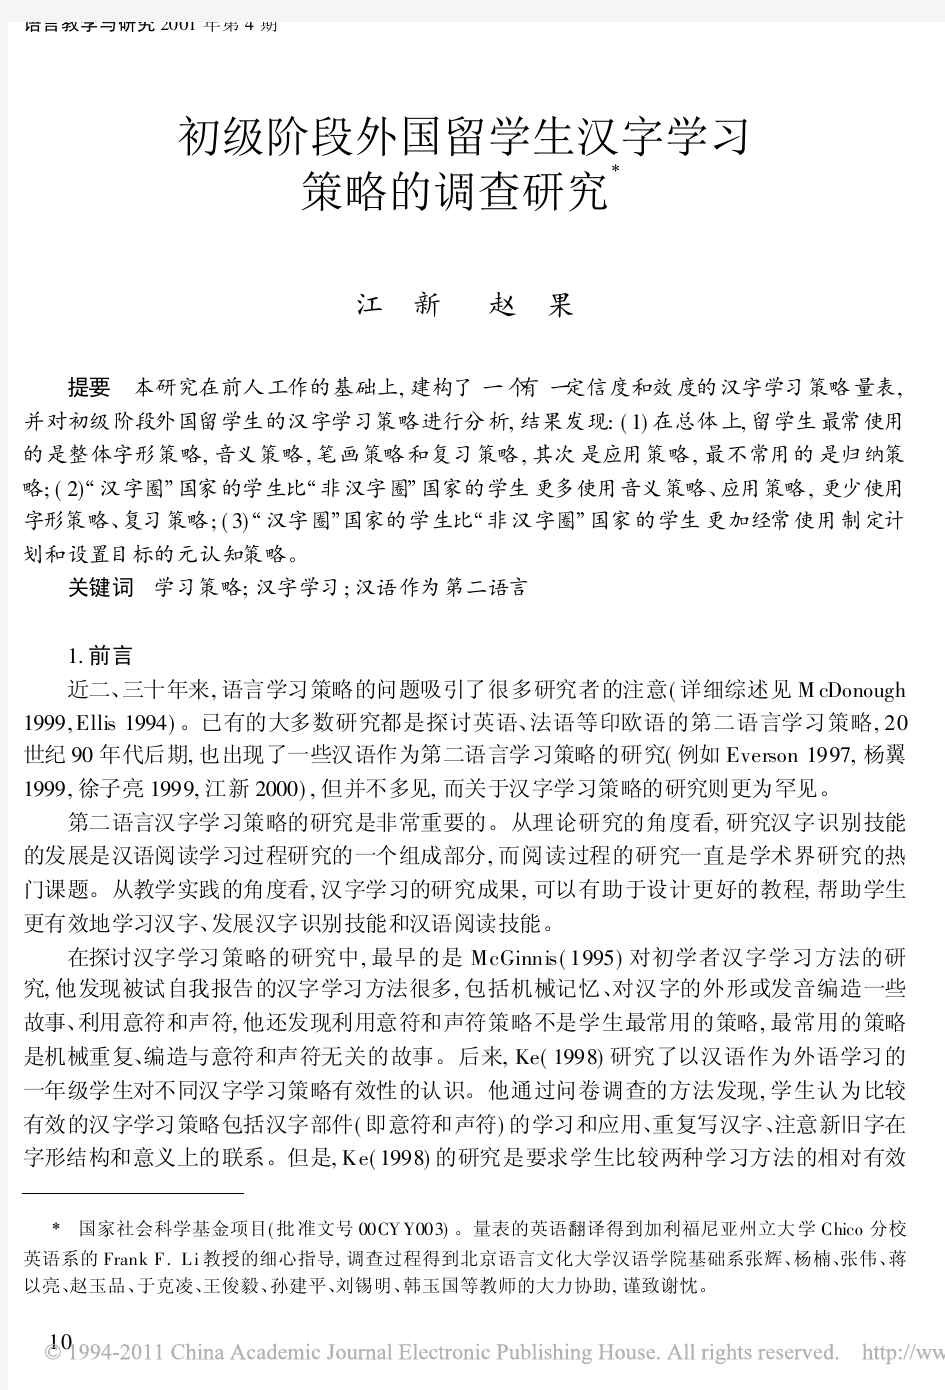 初级阶段外国留学生汉字学习策略的调查研究